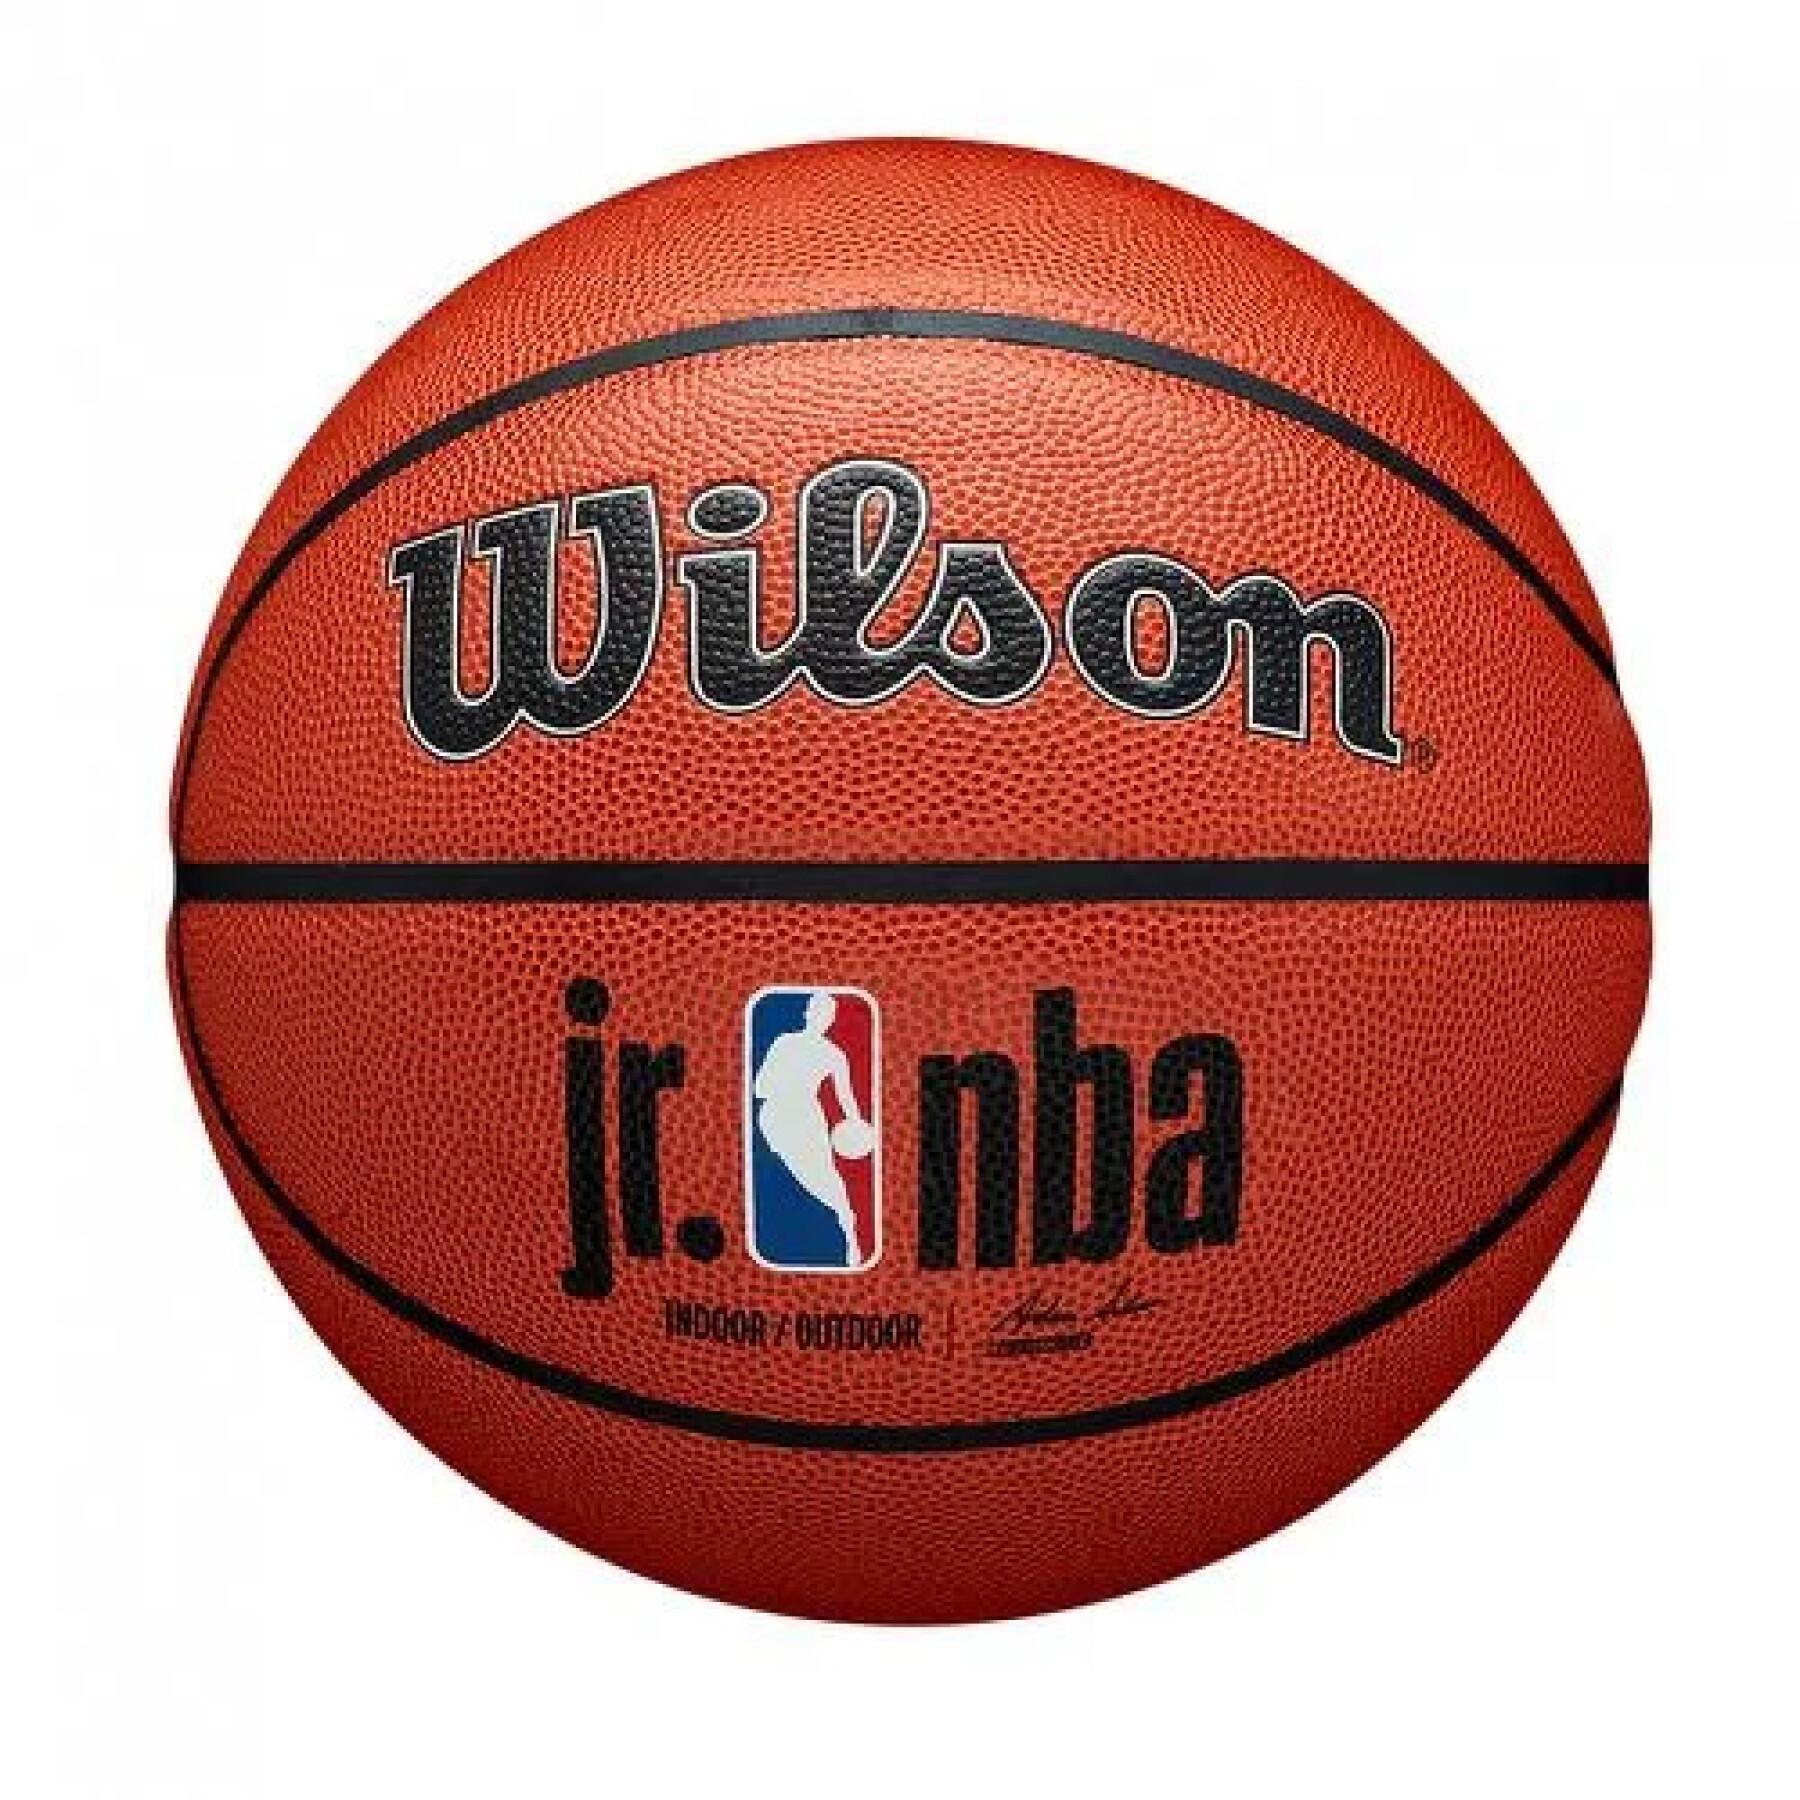 Balloon Wilson JR NBA Authentic Indoor/outdoor